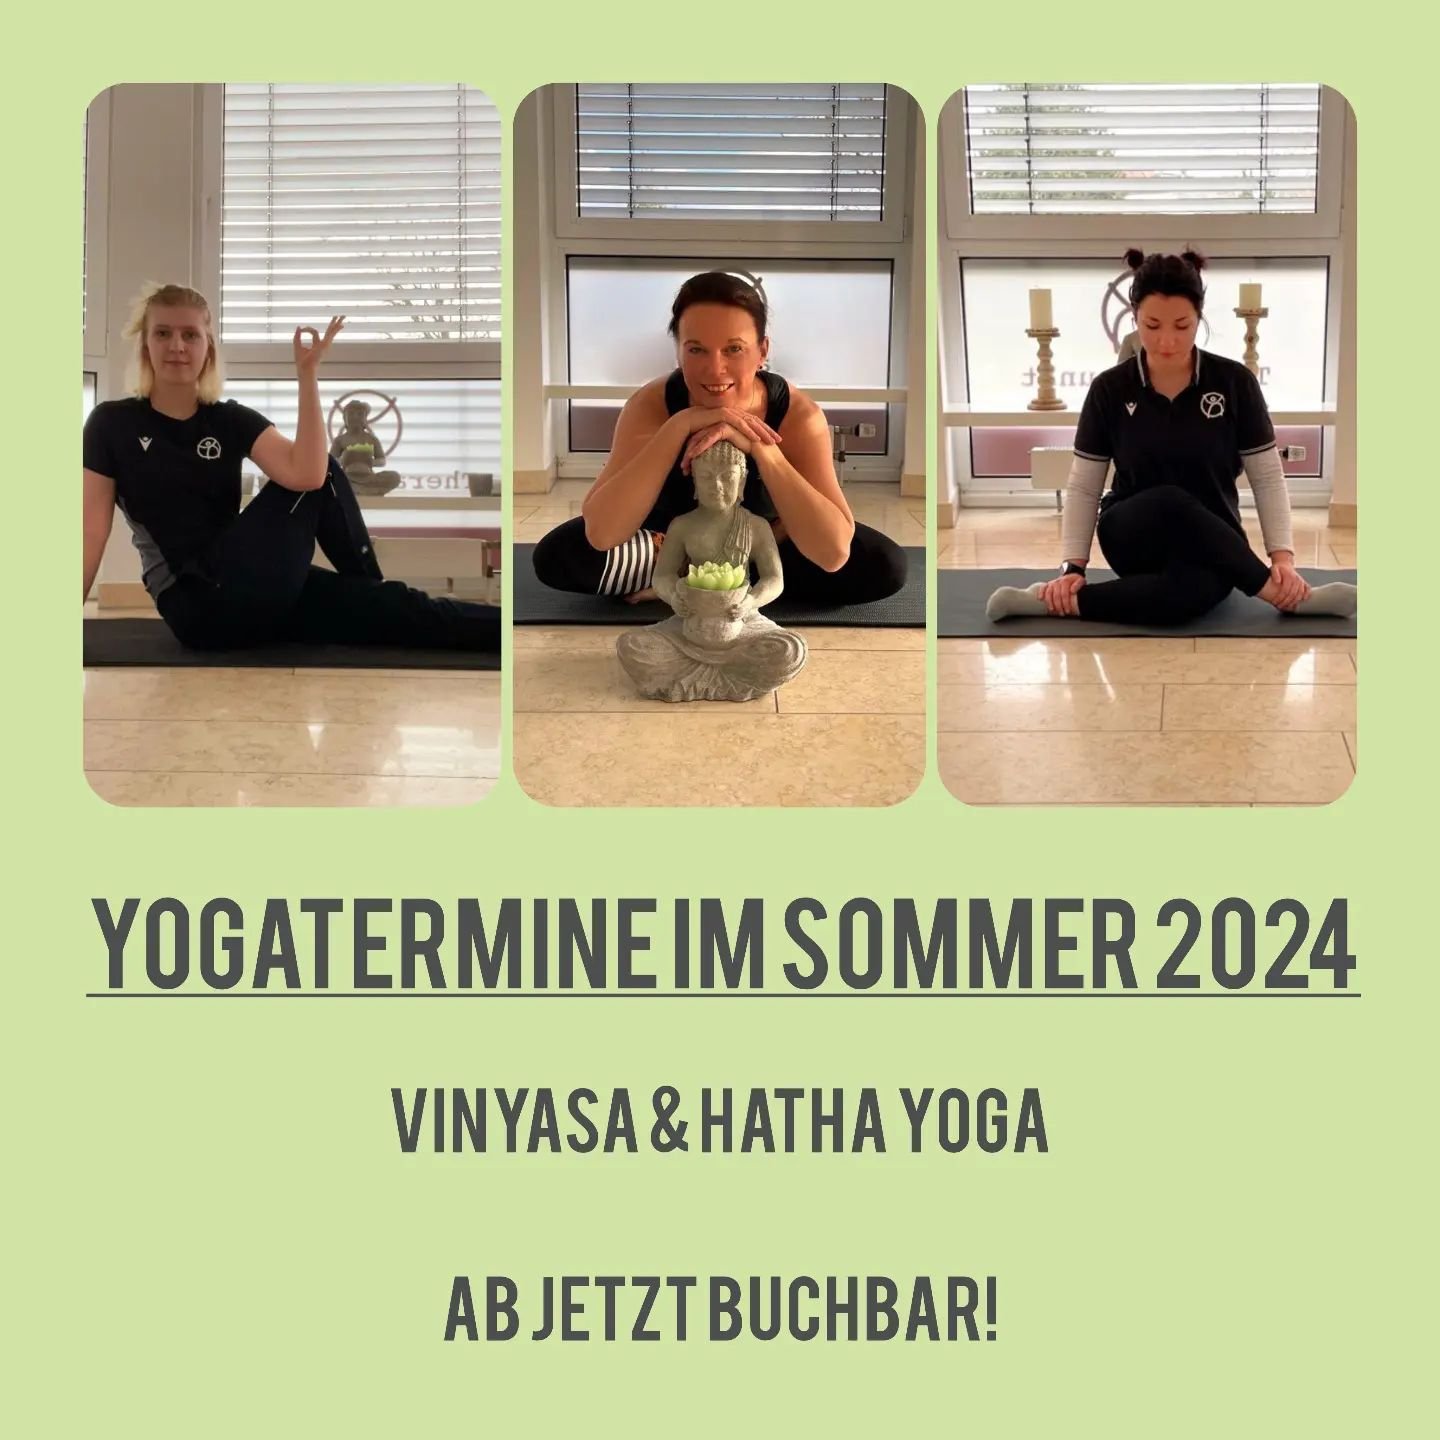 Sommeryoga

Unsere offenen Yogastunden im vergangenen Sommer fanden gro&szlig;en Anklang.

Deshalb&nbsp;m&ouml;chten wir dieses Konzept auch in diesem Sommer wieder anbieten. Unsere Yogalehrerinnen (Astrid, Lisa und Johanna) werden in jeder Stunde ei